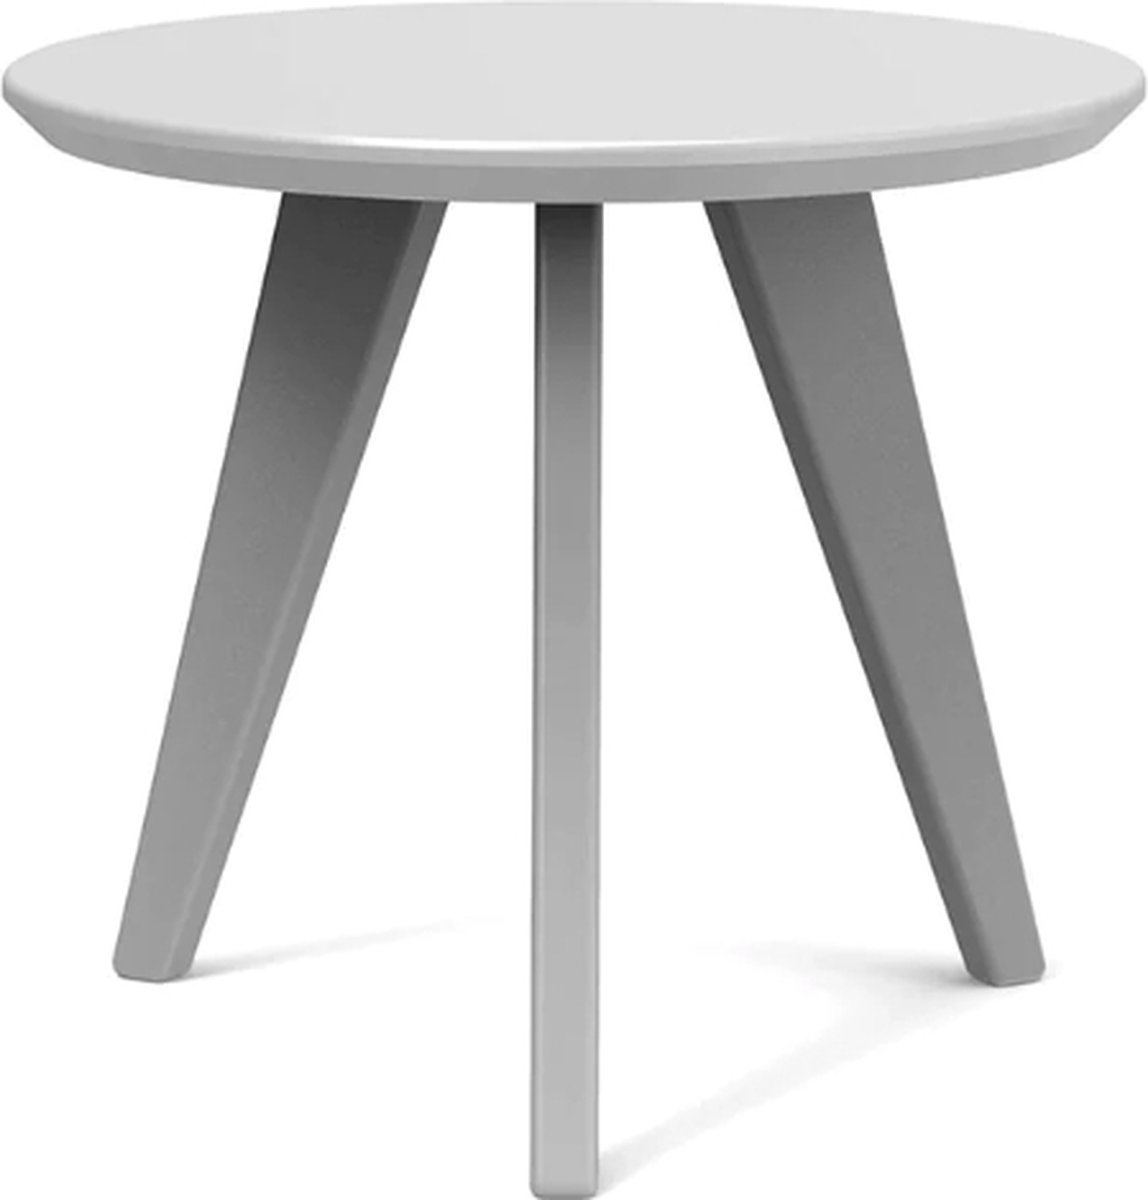 Loll Designs Satellite End Table round Driftwood (licht grijs)